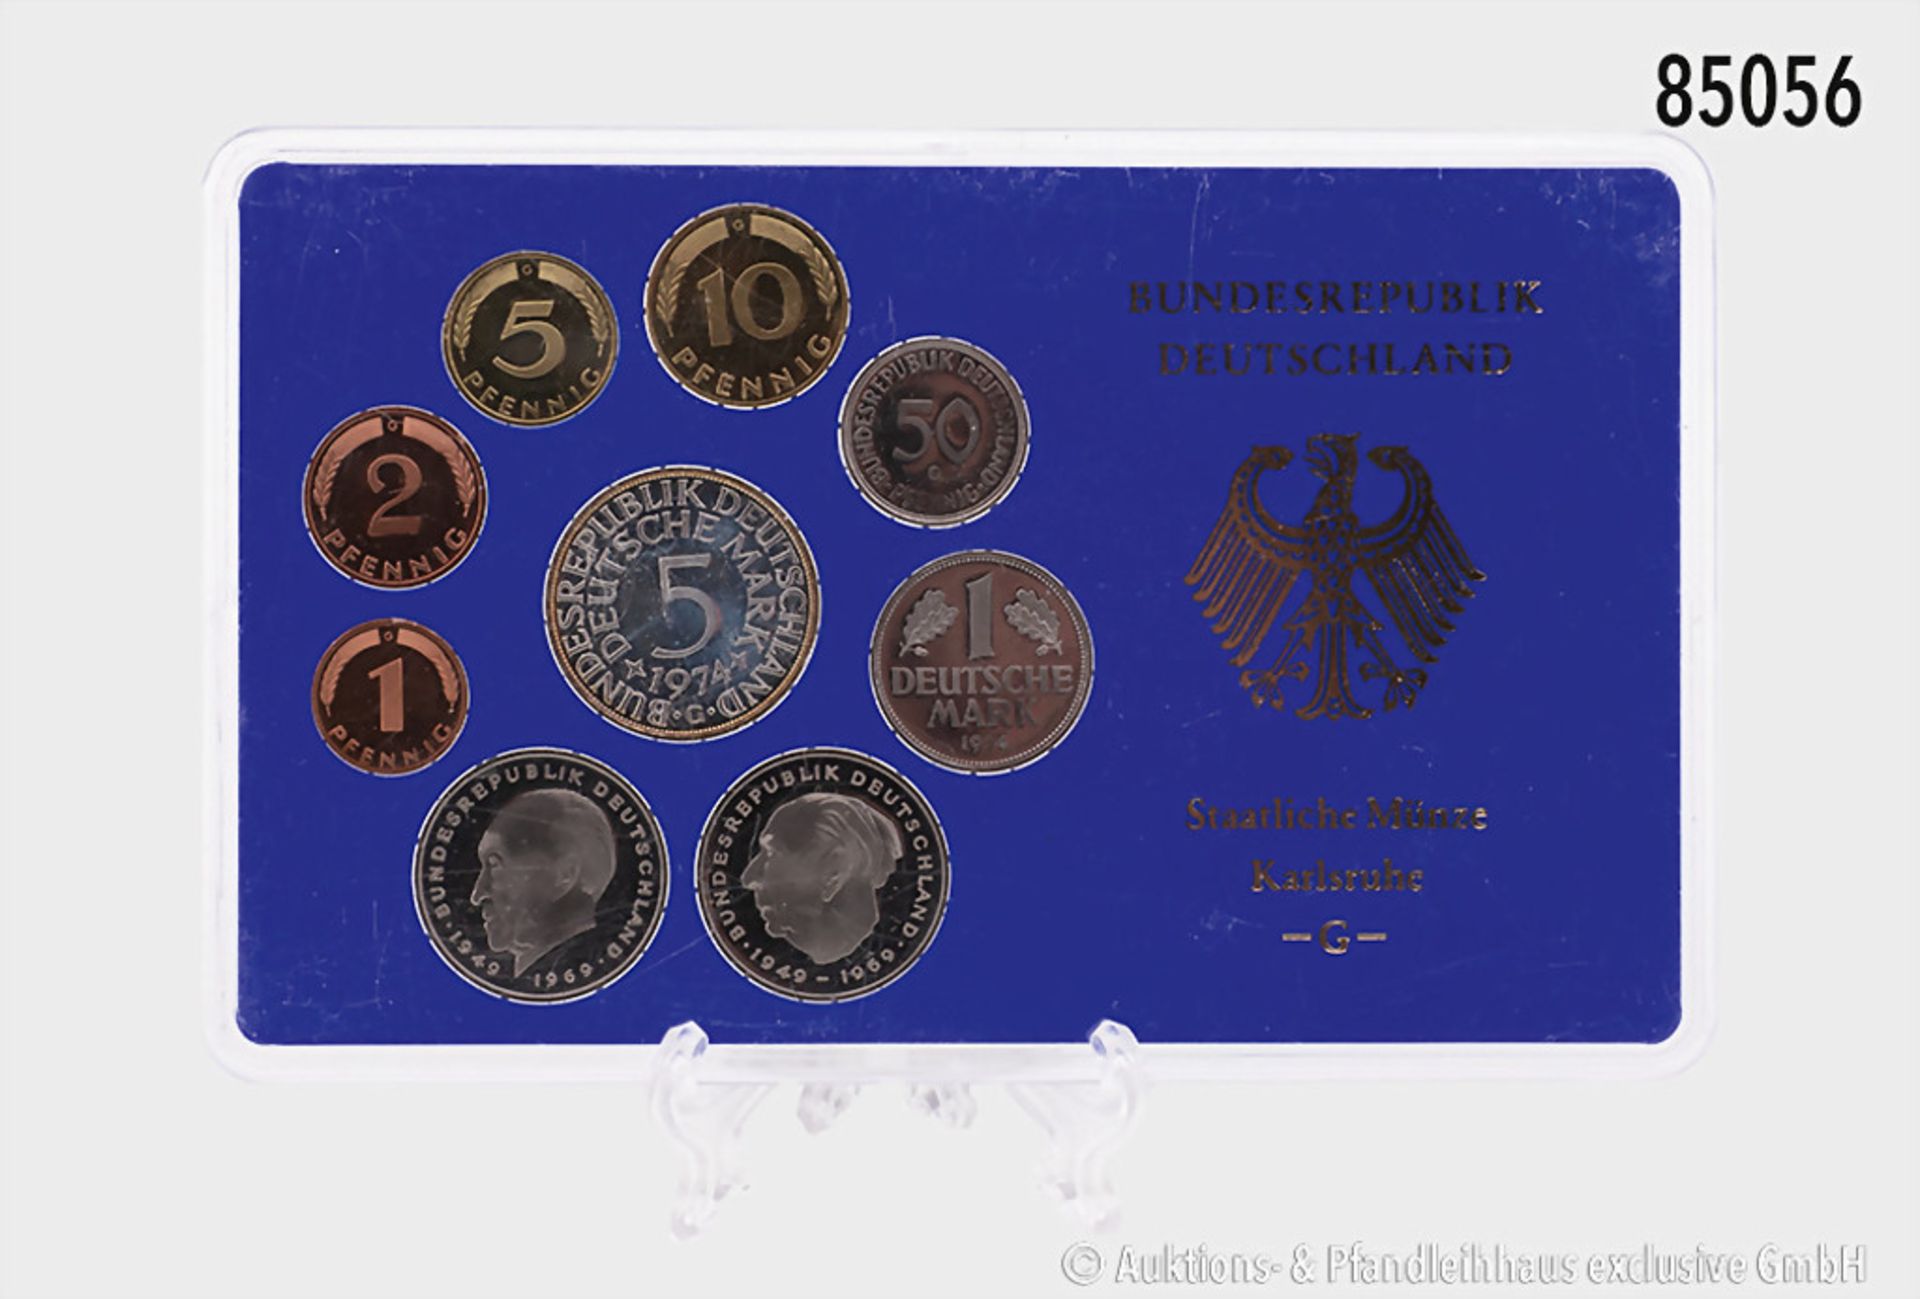 Konv. BRD, Kursmünzensätze 1974 G und J, inkl. Silberadler, PP, in OVP, OVP mit kleinen ...